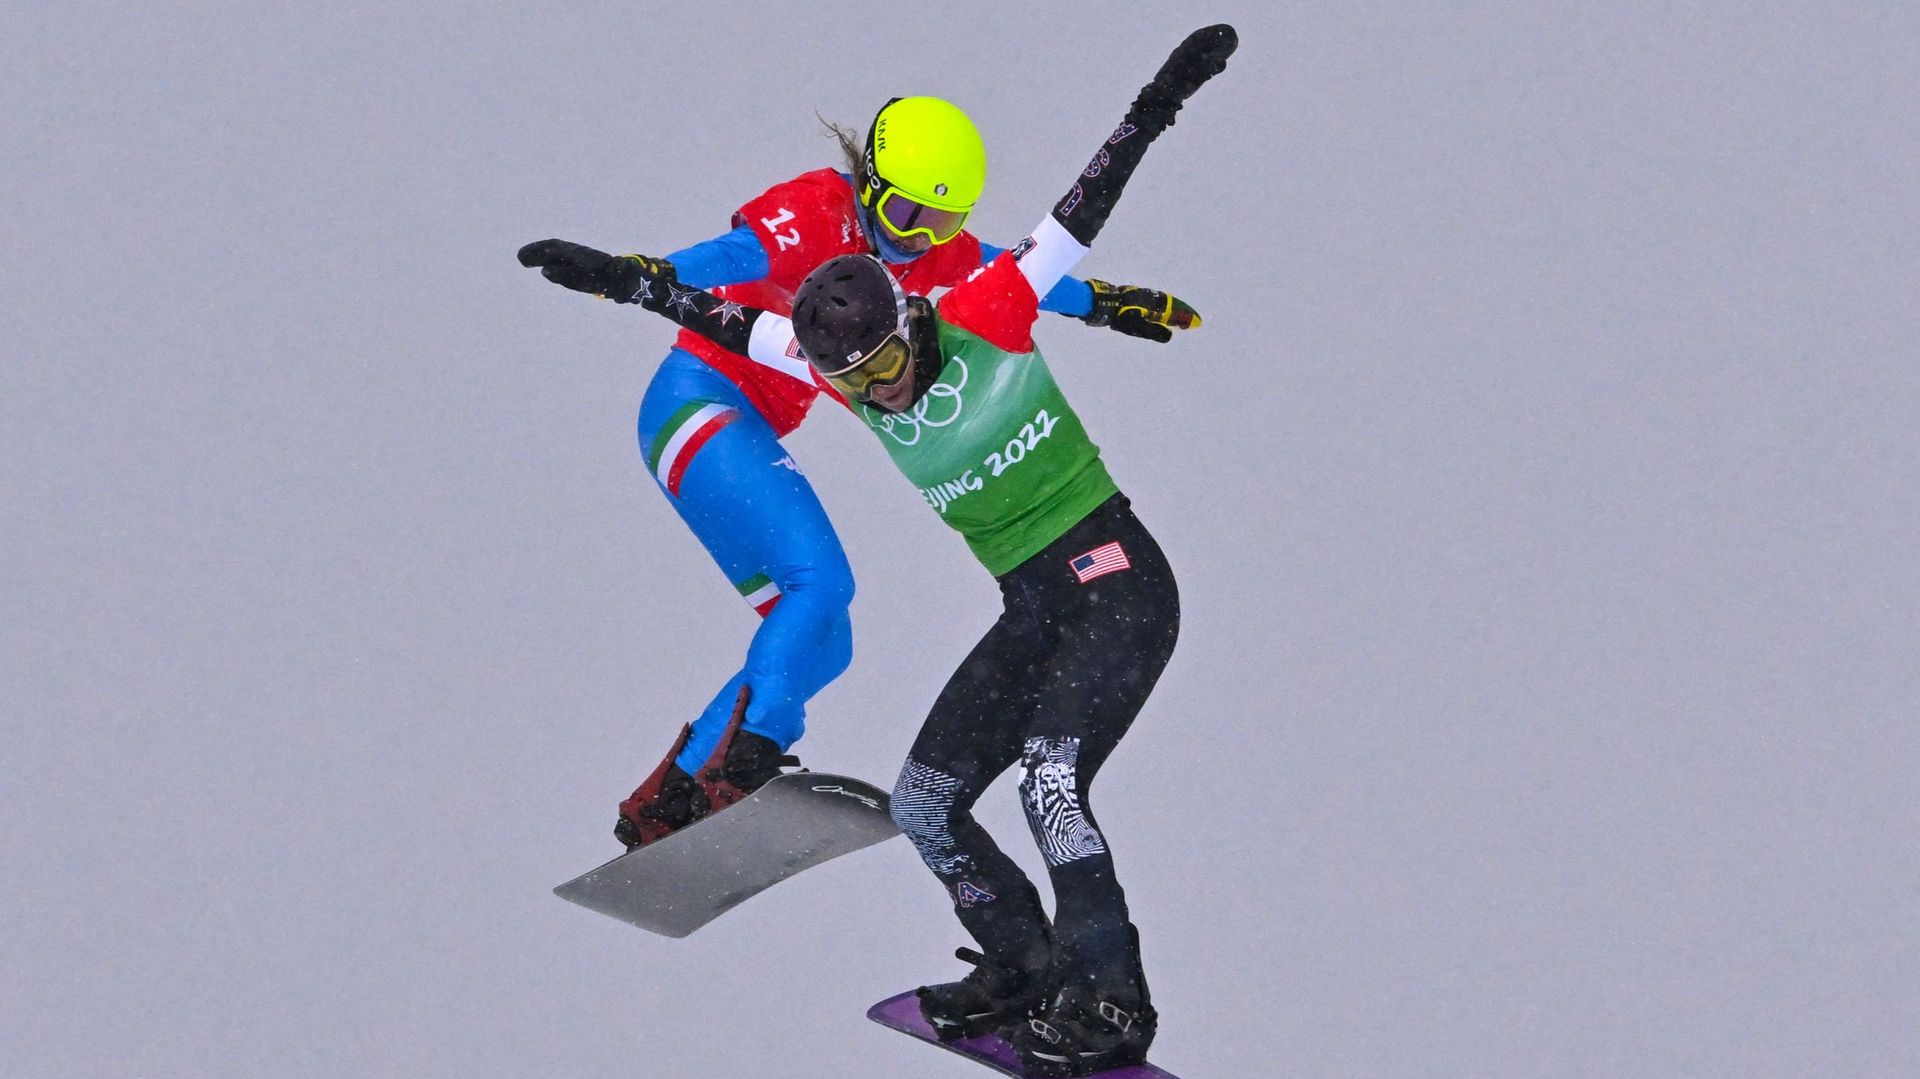 Trois jours après avoir décroché le titre olympique individuel, la snowboardeuse américaine Lindsey Jacobellis s’est offert une seconde médaille d’or grâce à l’épreuve mixte, associée au vétéran Nick Baumgartner (40 ans), samedi aux Jeux Olympiques de Pék